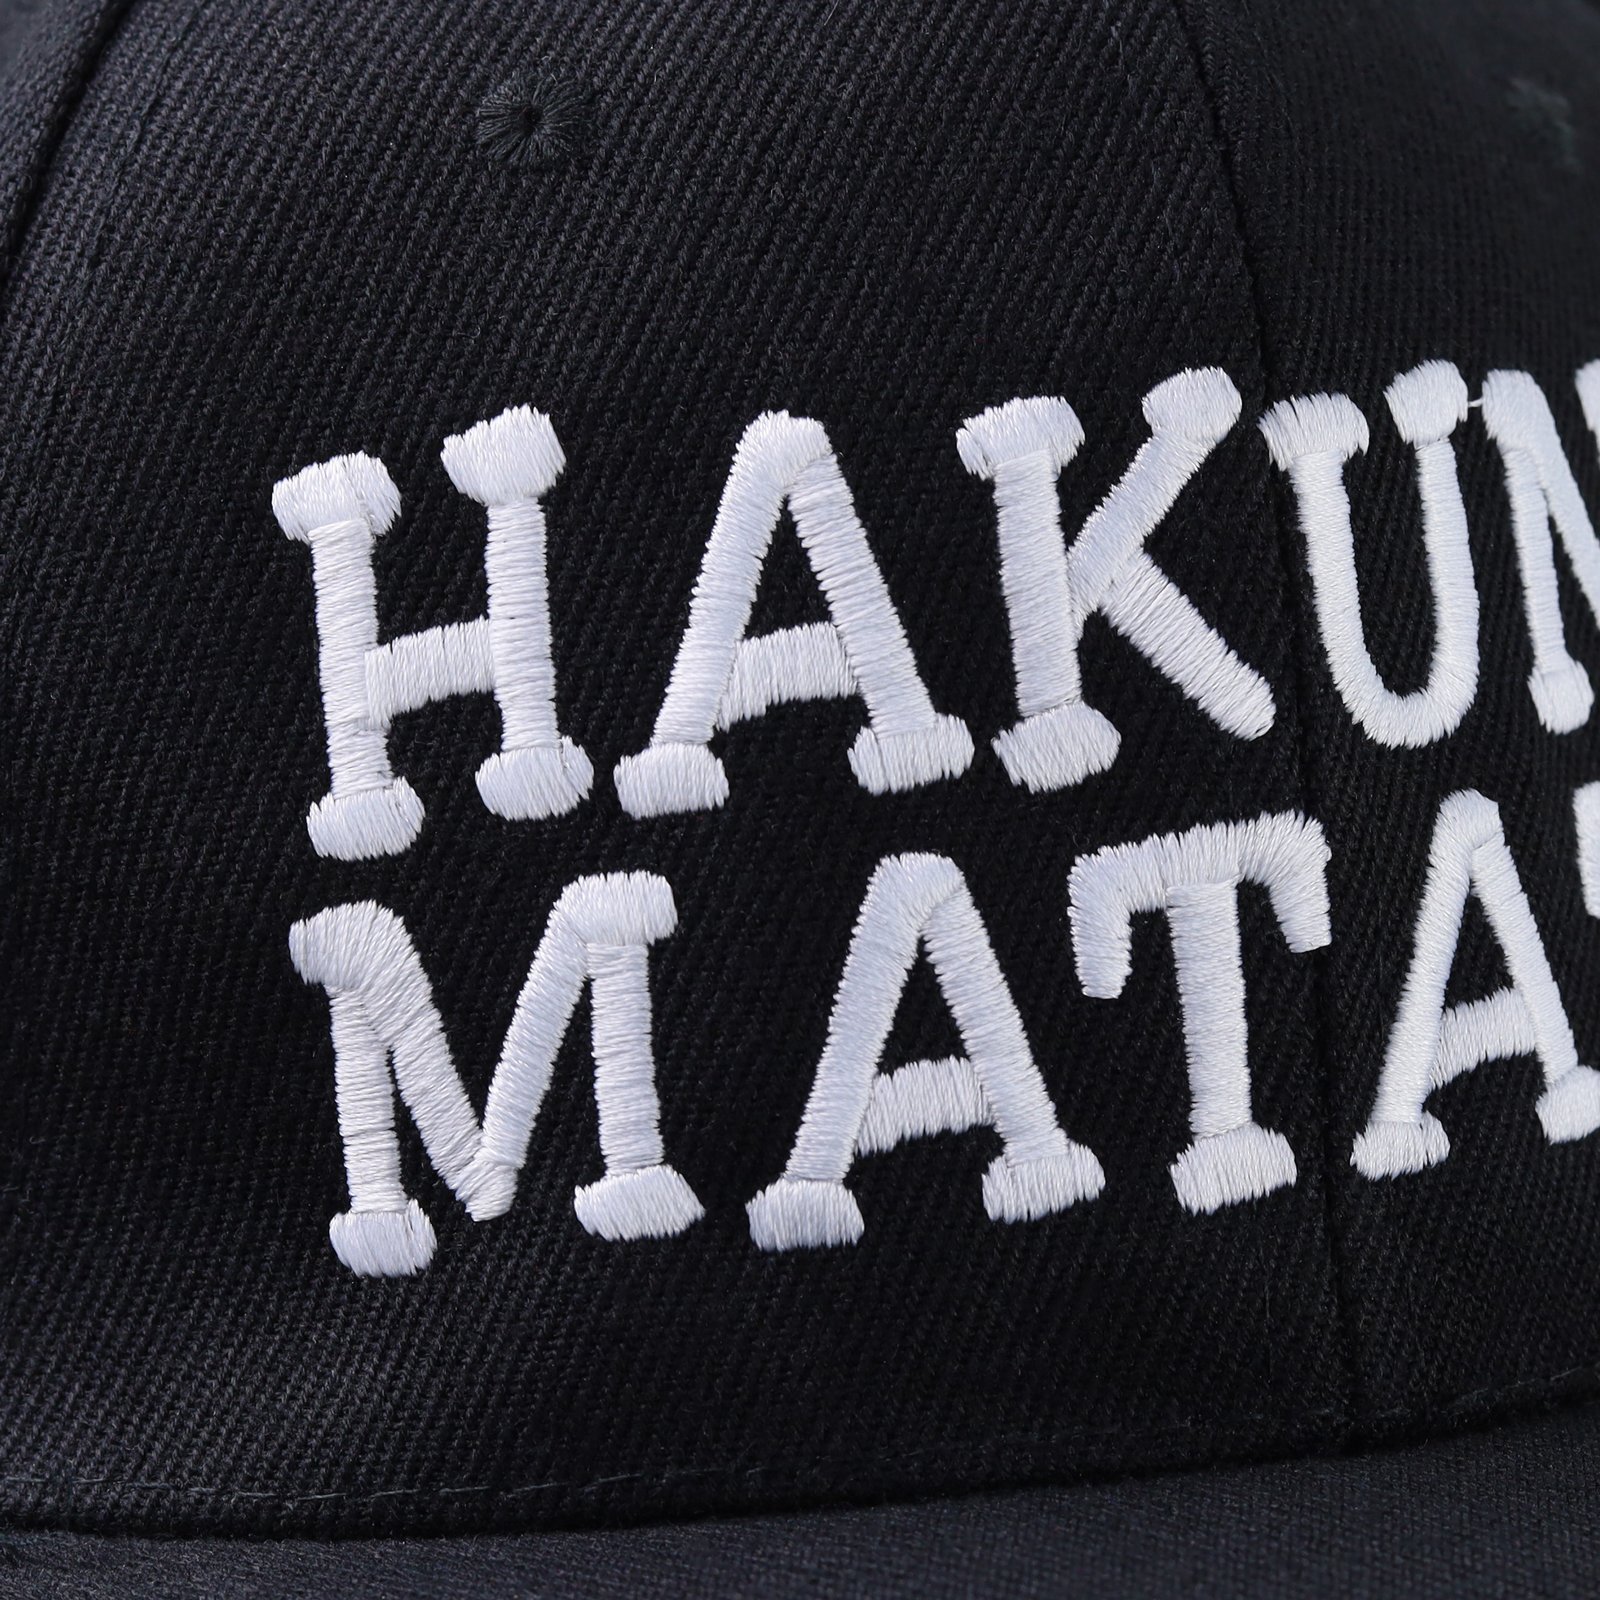 Hakuna Matata - Kappe